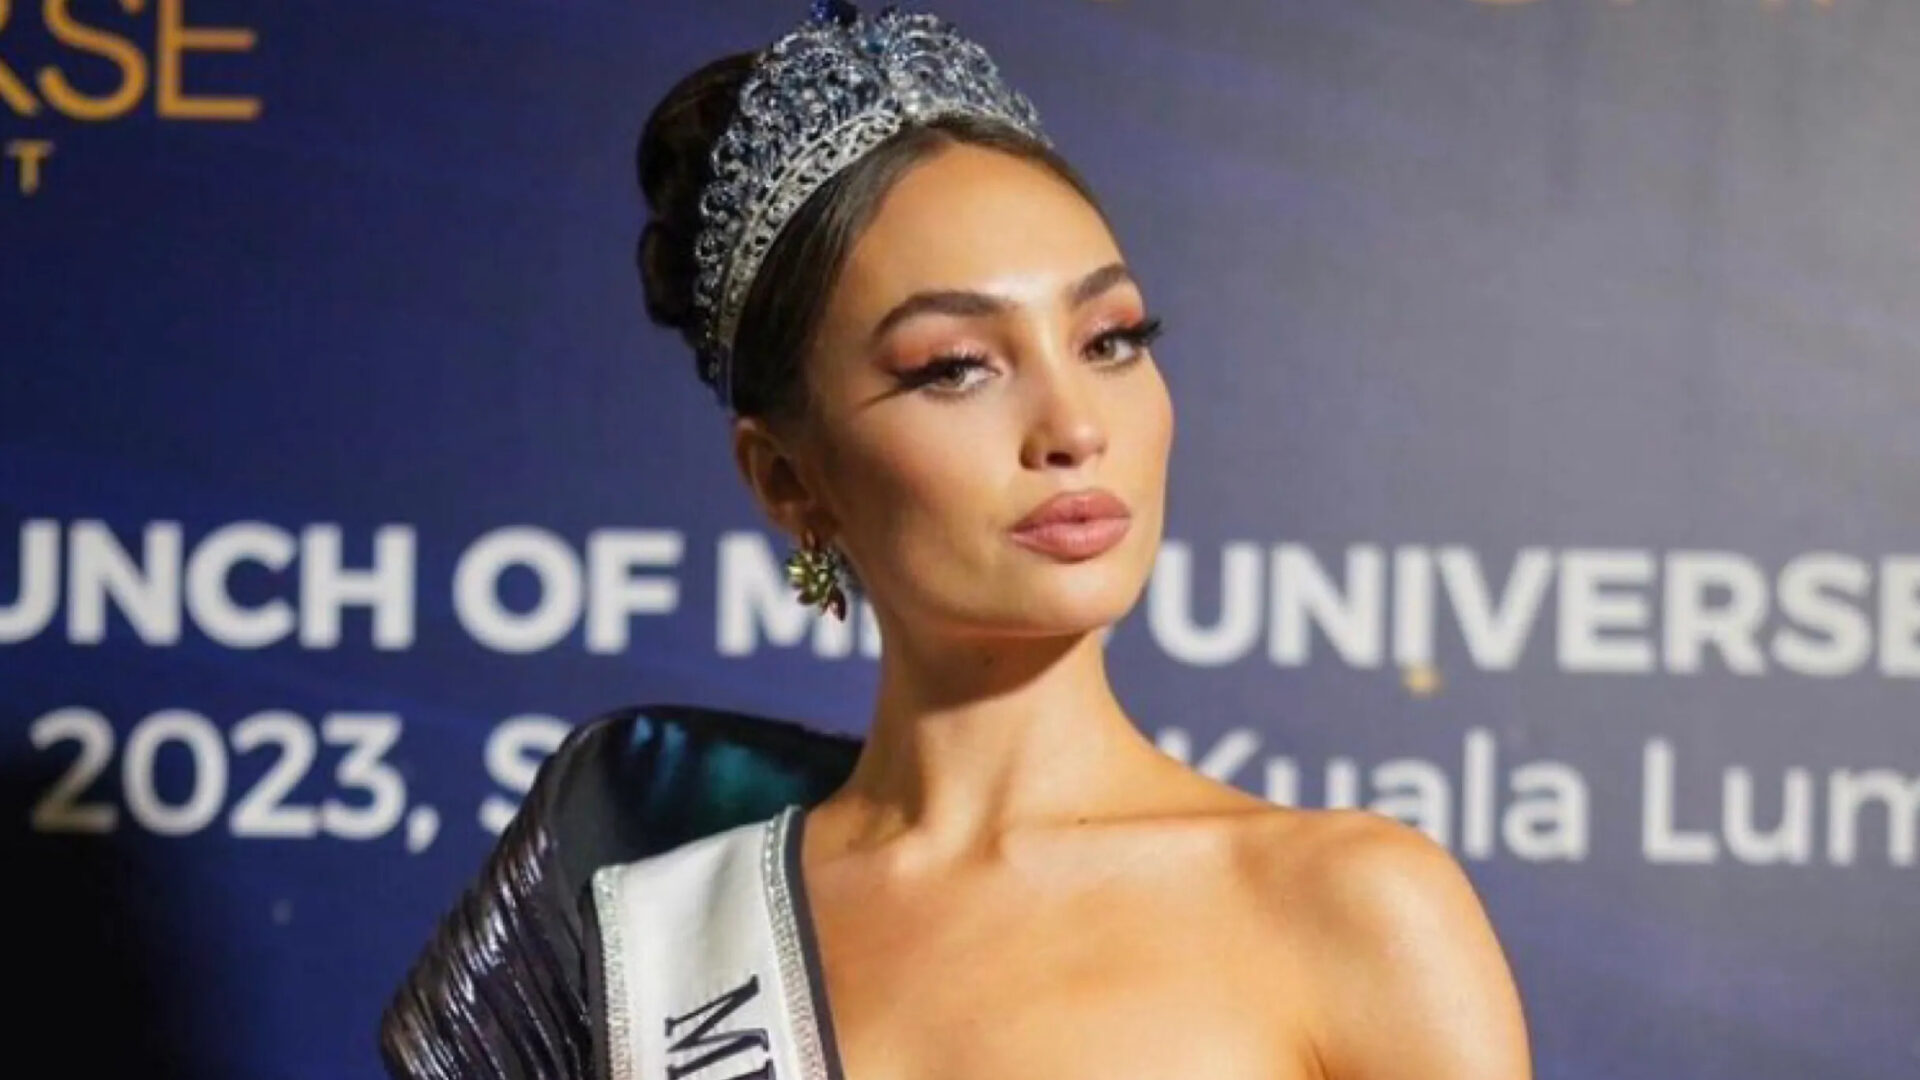 Miss Universo anuncia el fin de las restricciones de edad en el concurso de belleza